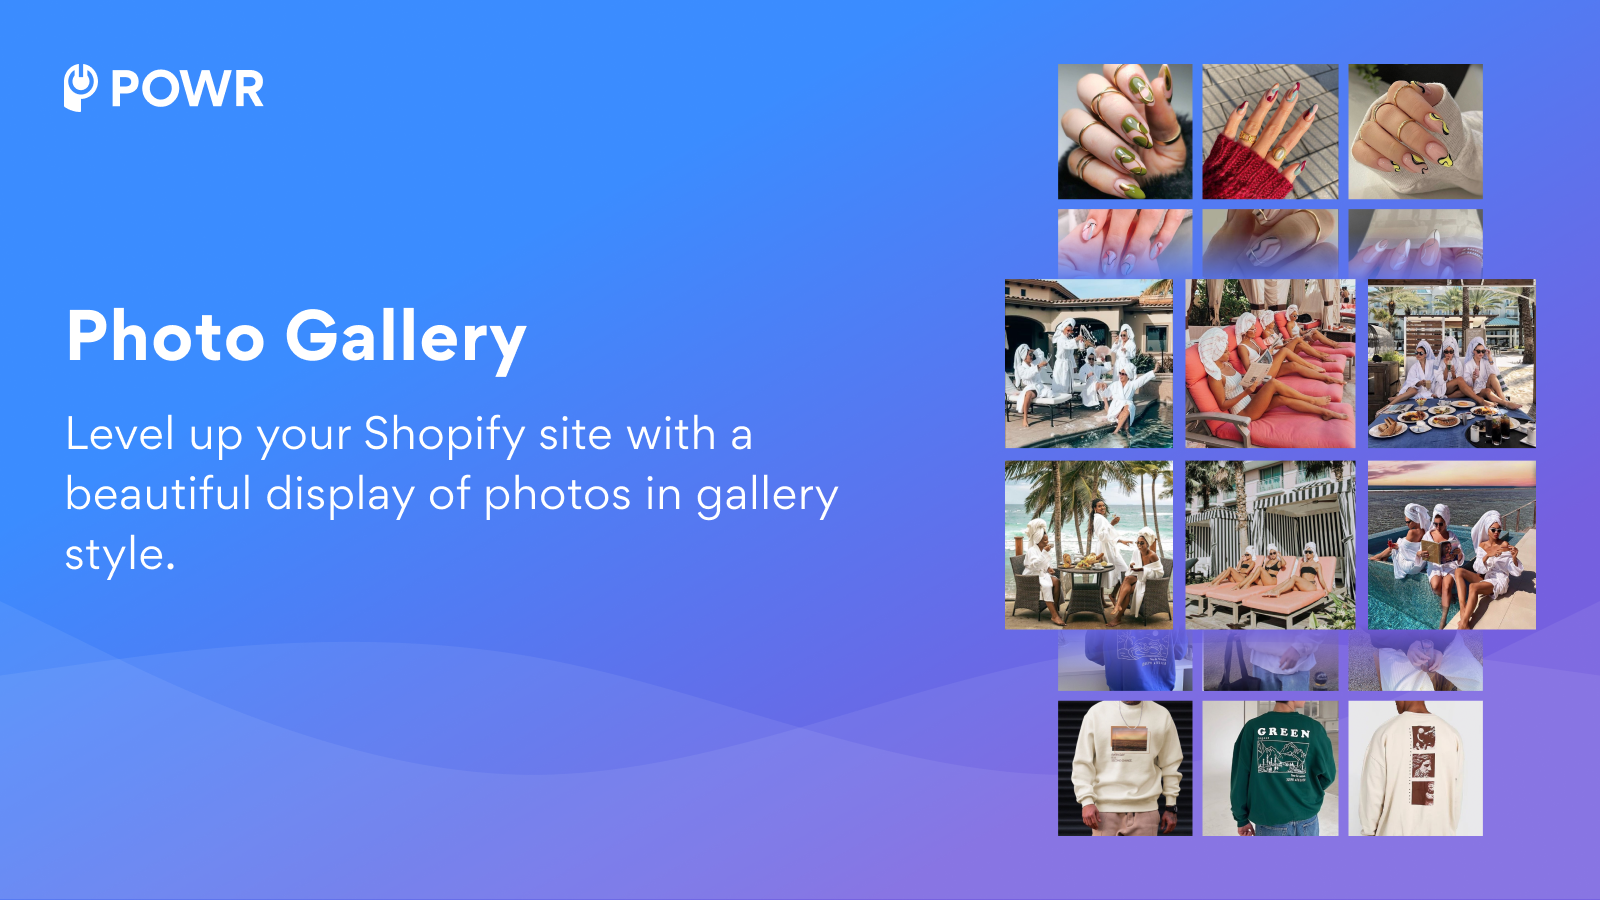 Höj din Shopify-webbplats med en vacker visning av foton i